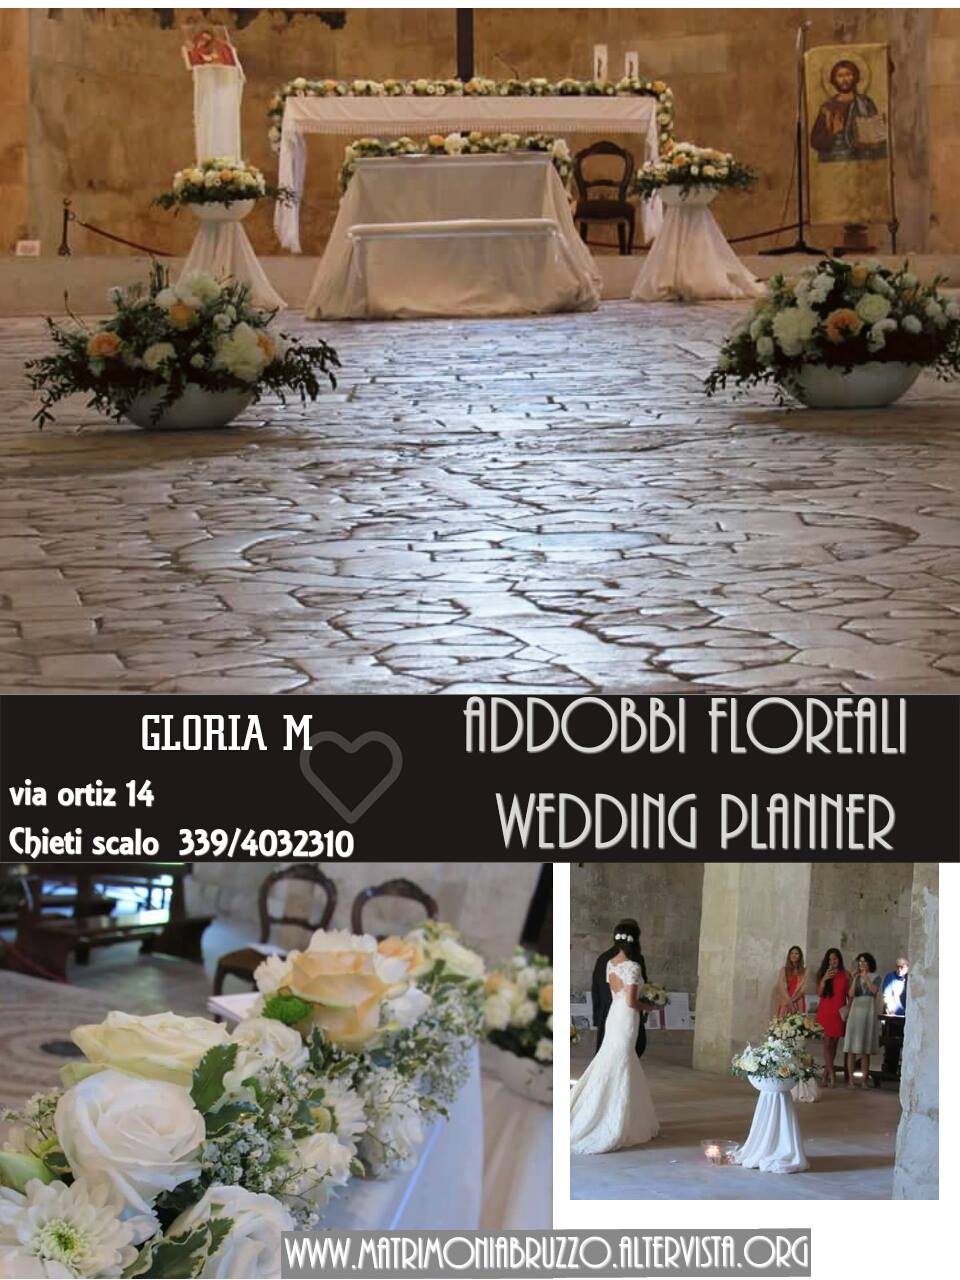 Gloria M Wedding Addobbi Floreali Pescara E Chieti